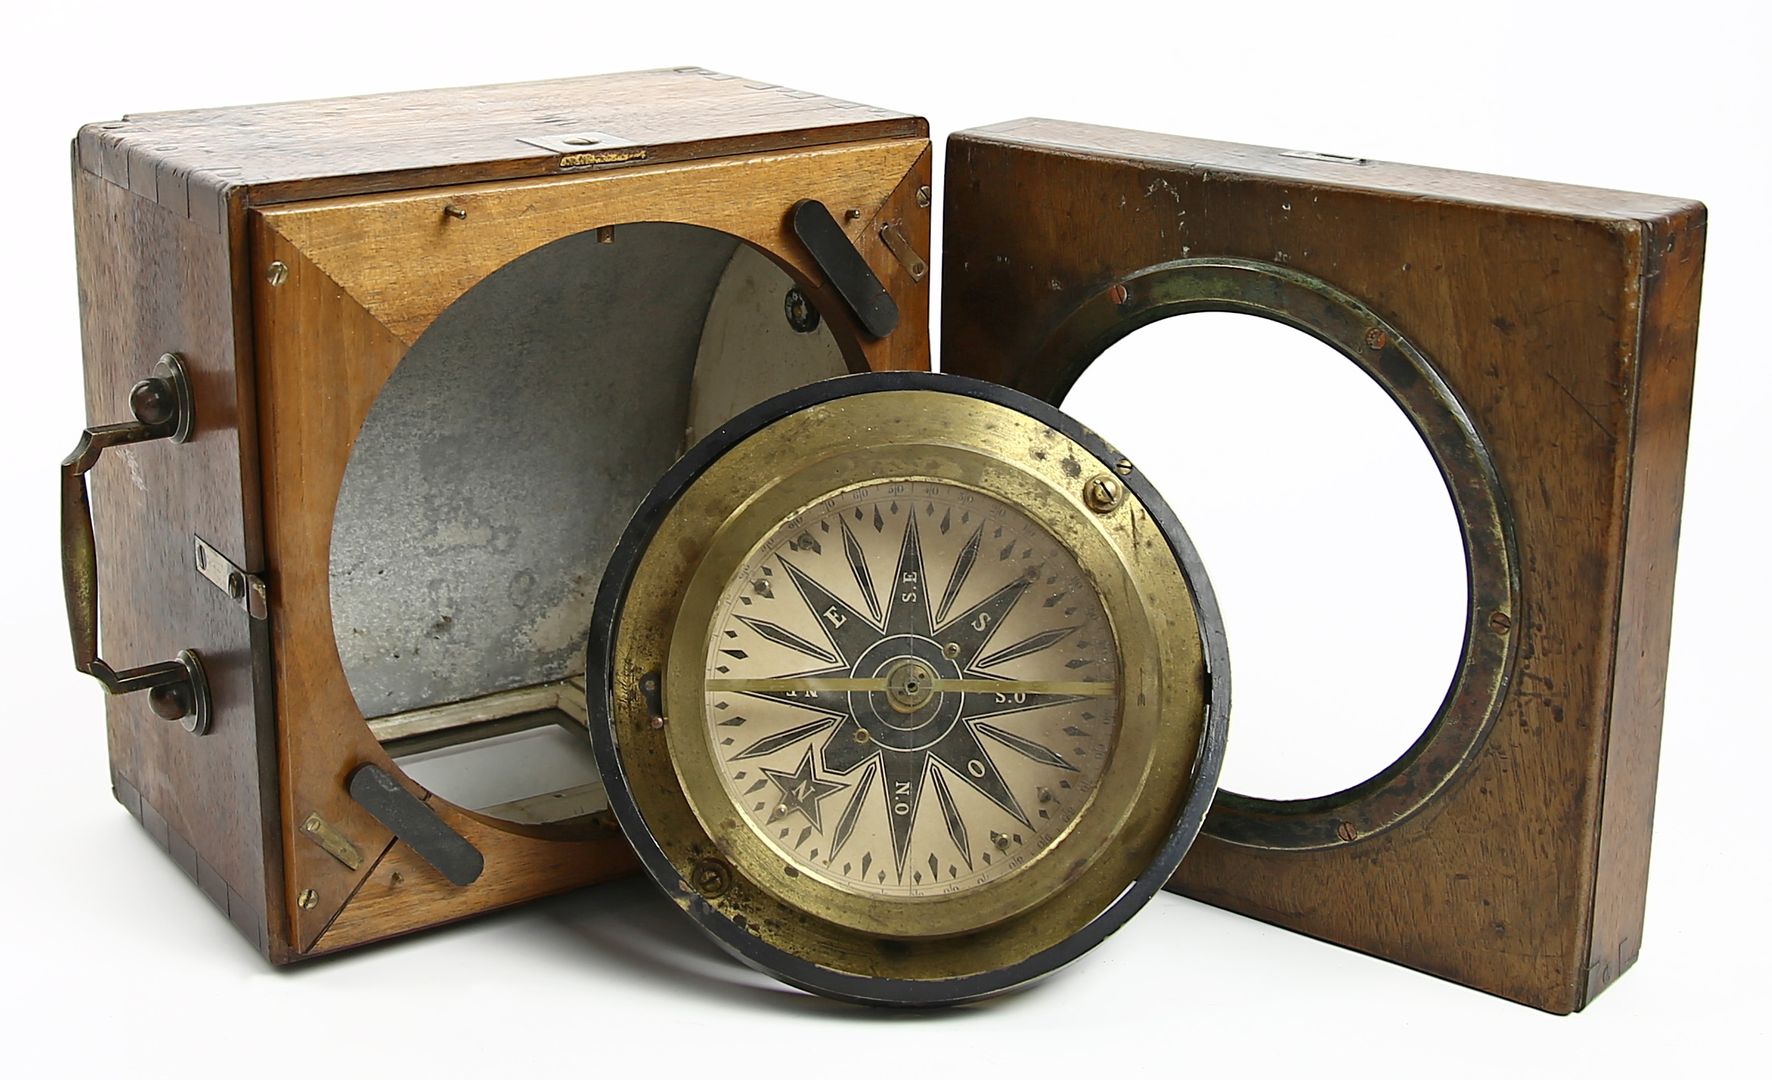 Kompass in verglastem Holzkasten.